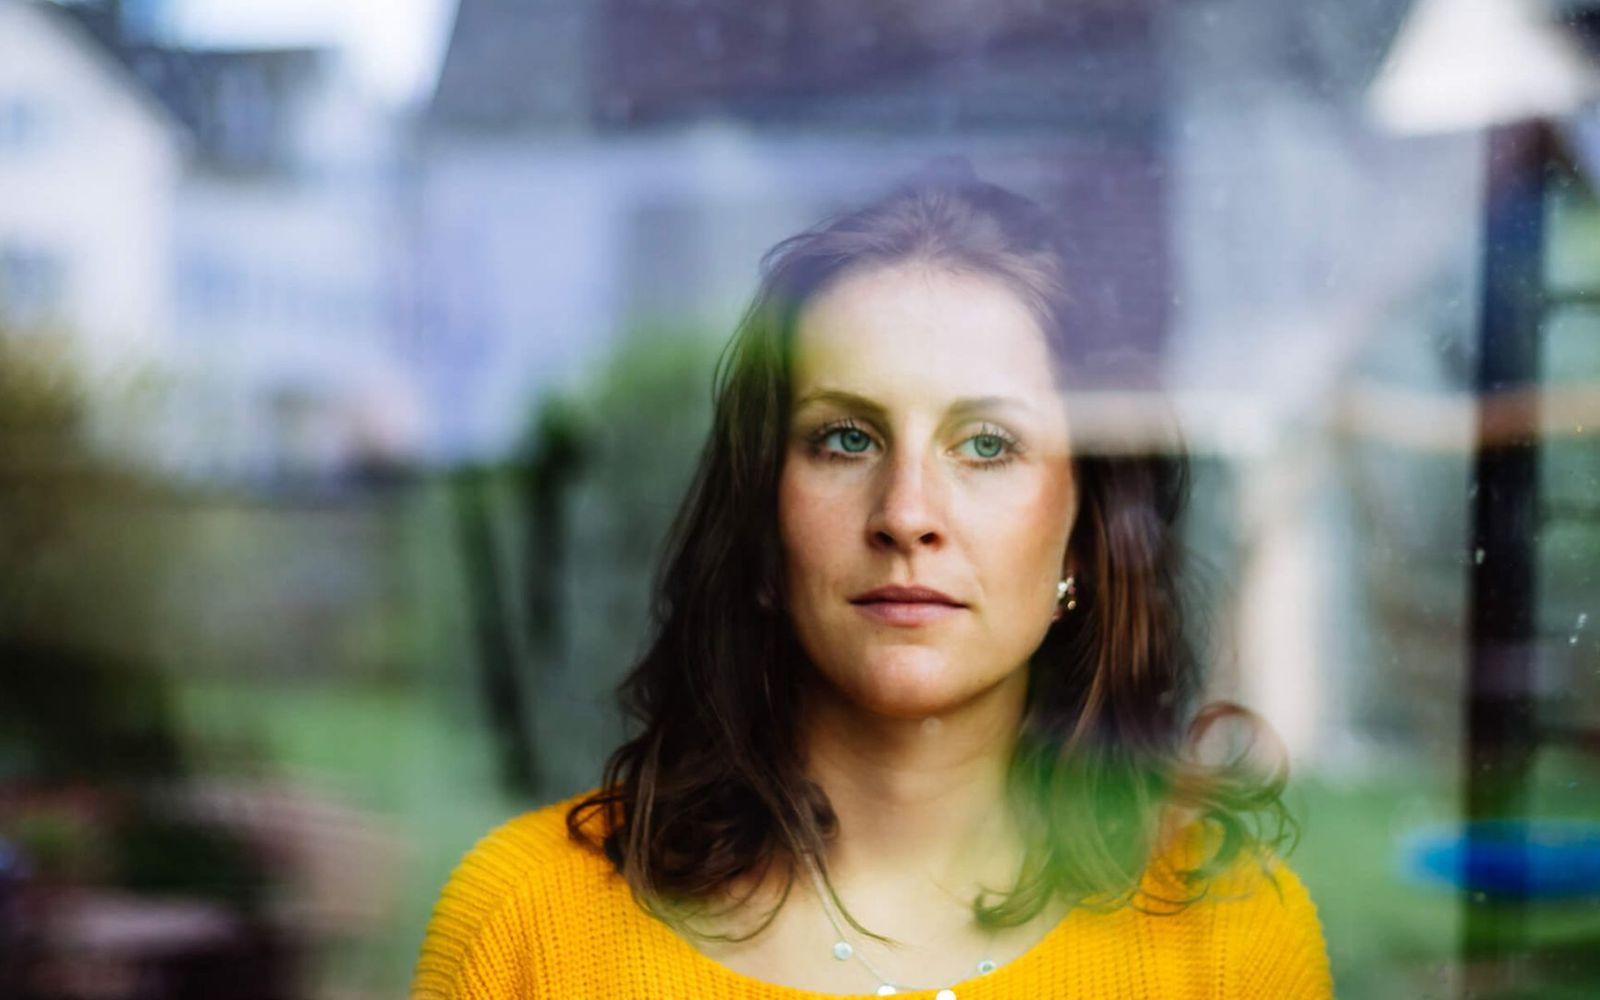 Generalisierte Angststörung: Frau schaut nachdenklich aus dem Fenster